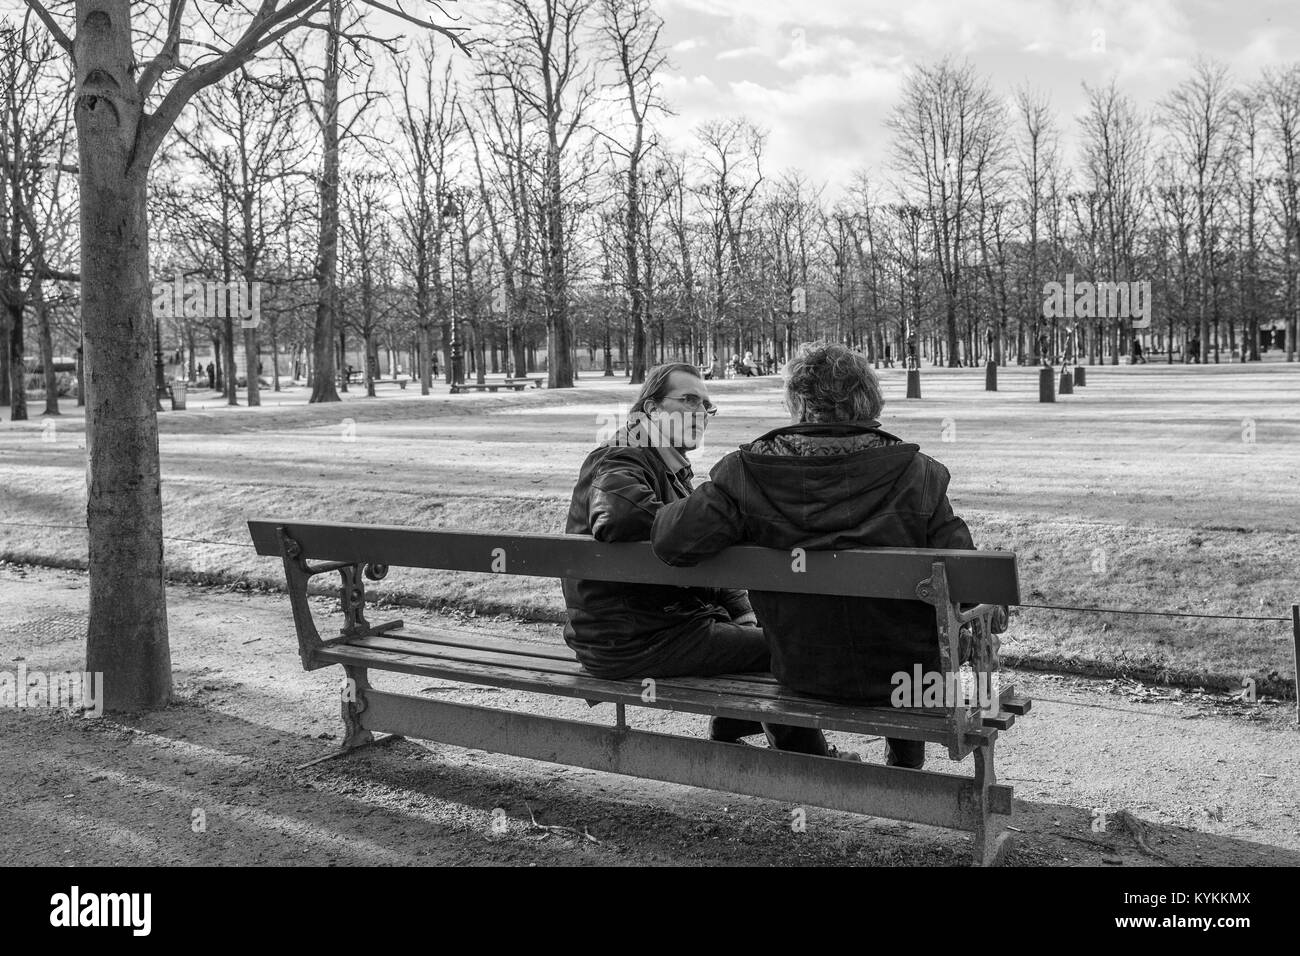 PARIS-Jan.3, 2014 : deux hommes assis sur un banc de parc en conversation sur une journée d'hiver. Noir et blanc. Banque D'Images